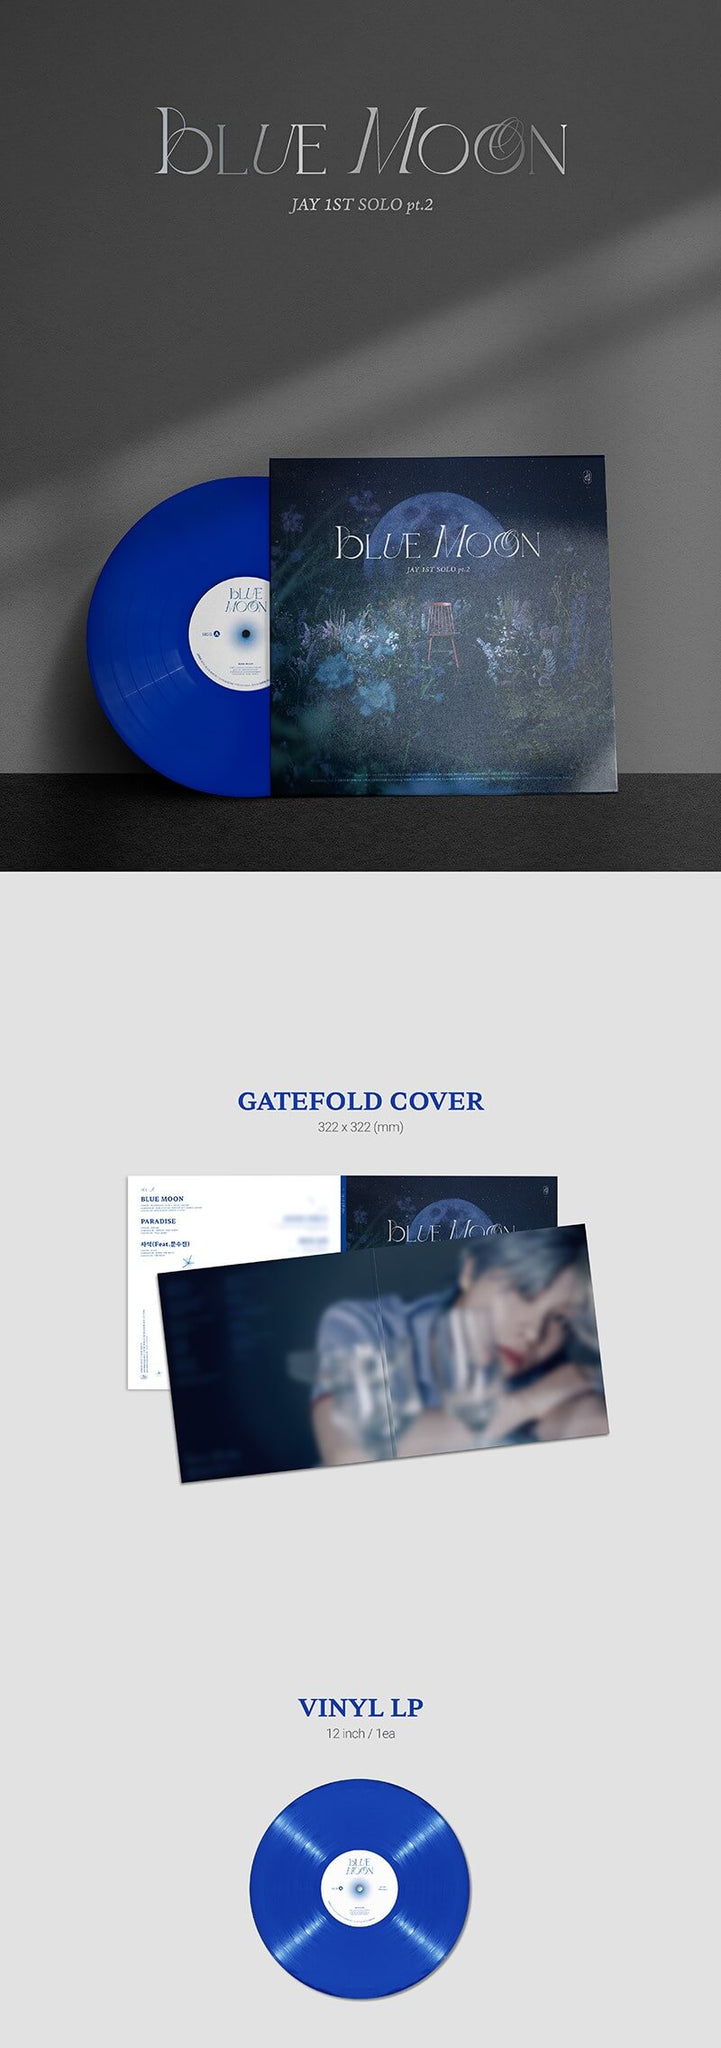 Jay 1st Solo pt. 2 BLUE MOON - Vinyl LP Inclusions Gatefold Cover Vinyl LP 